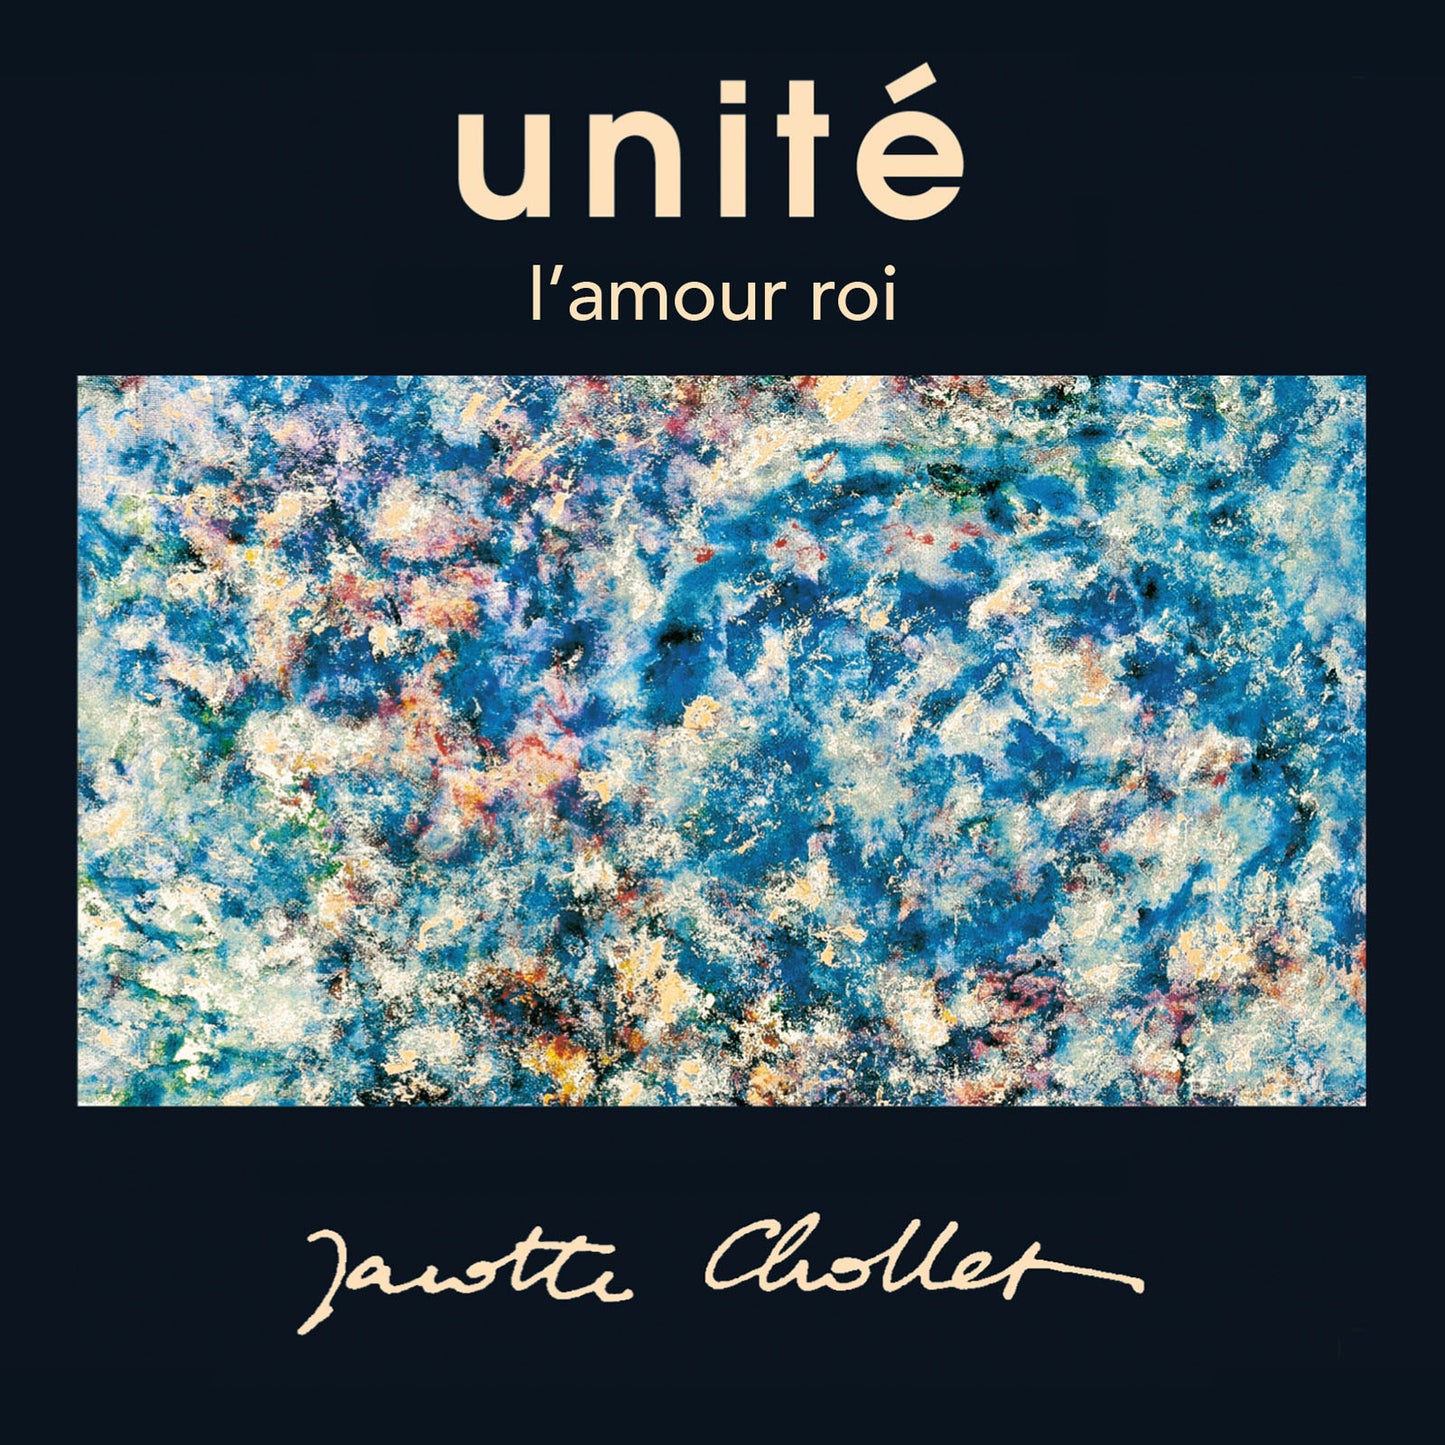 Unite - 2 albums